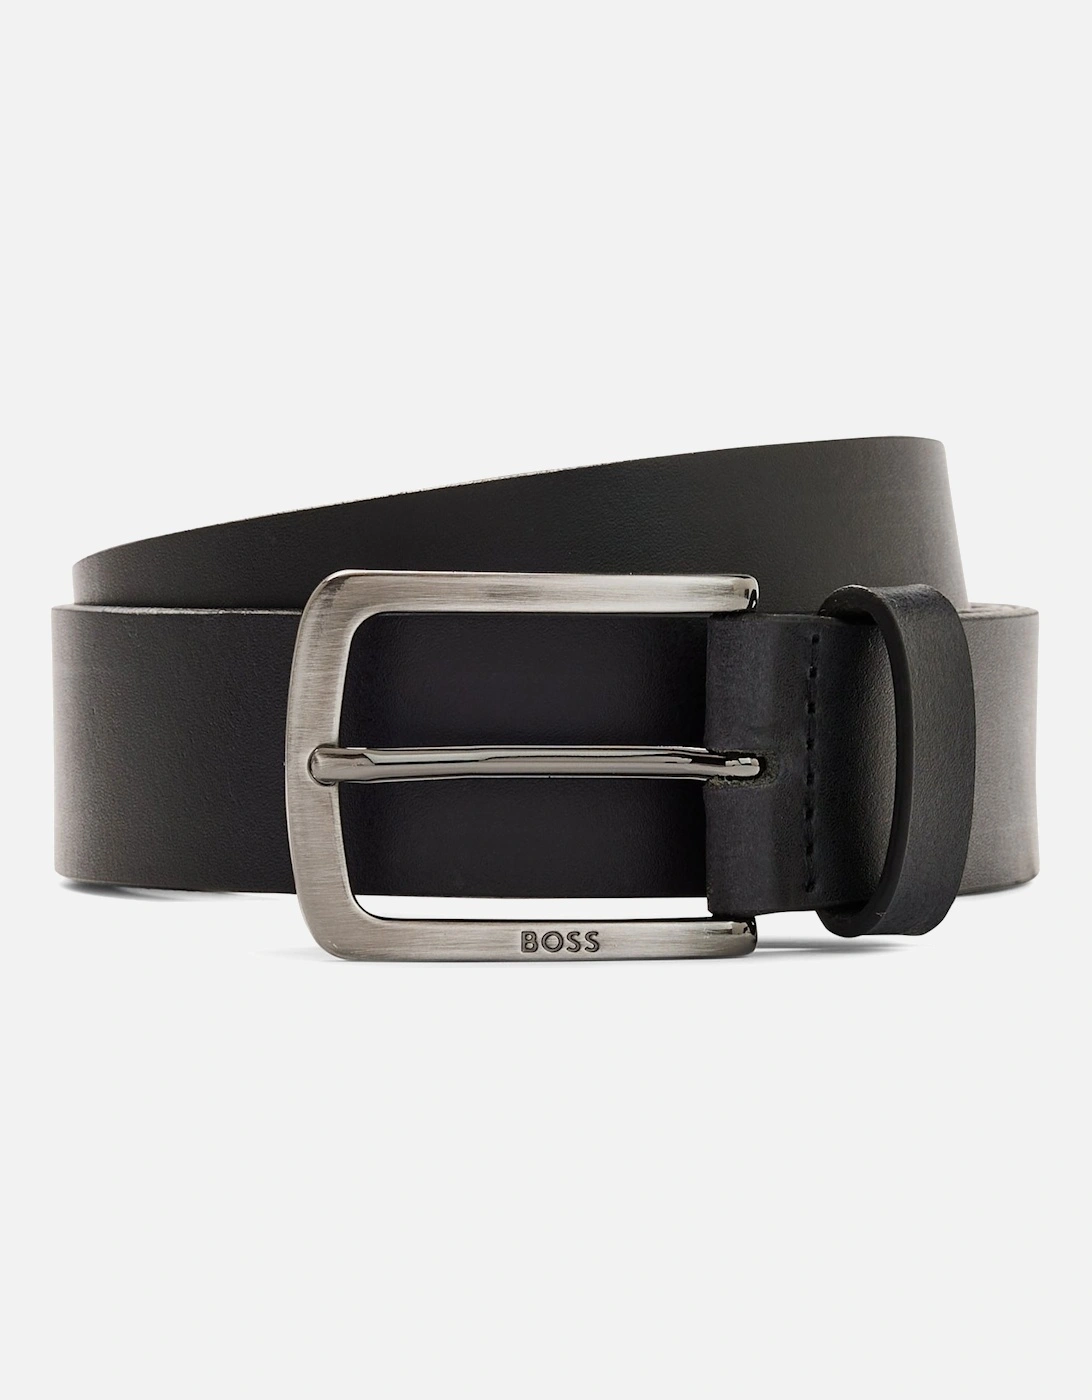 Boss Jor-metal-tip Leather Belt Black, 3 of 2